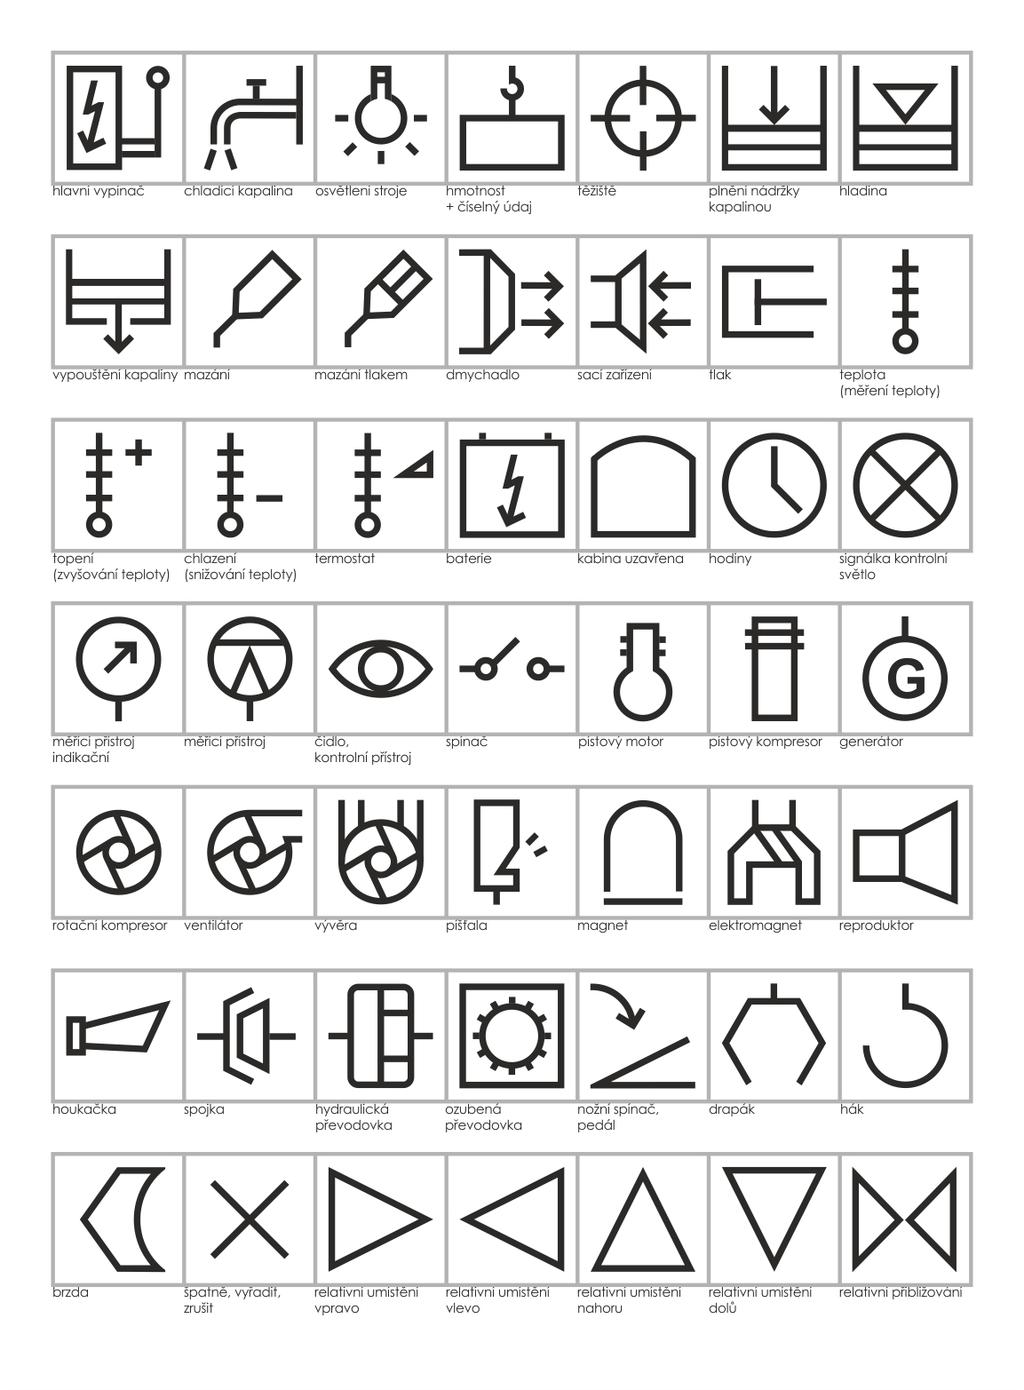 Symboly a znaky 1979 Uvedeny jako grafická úprava a rozšíření symbolů k normě ČSN 20 0032,